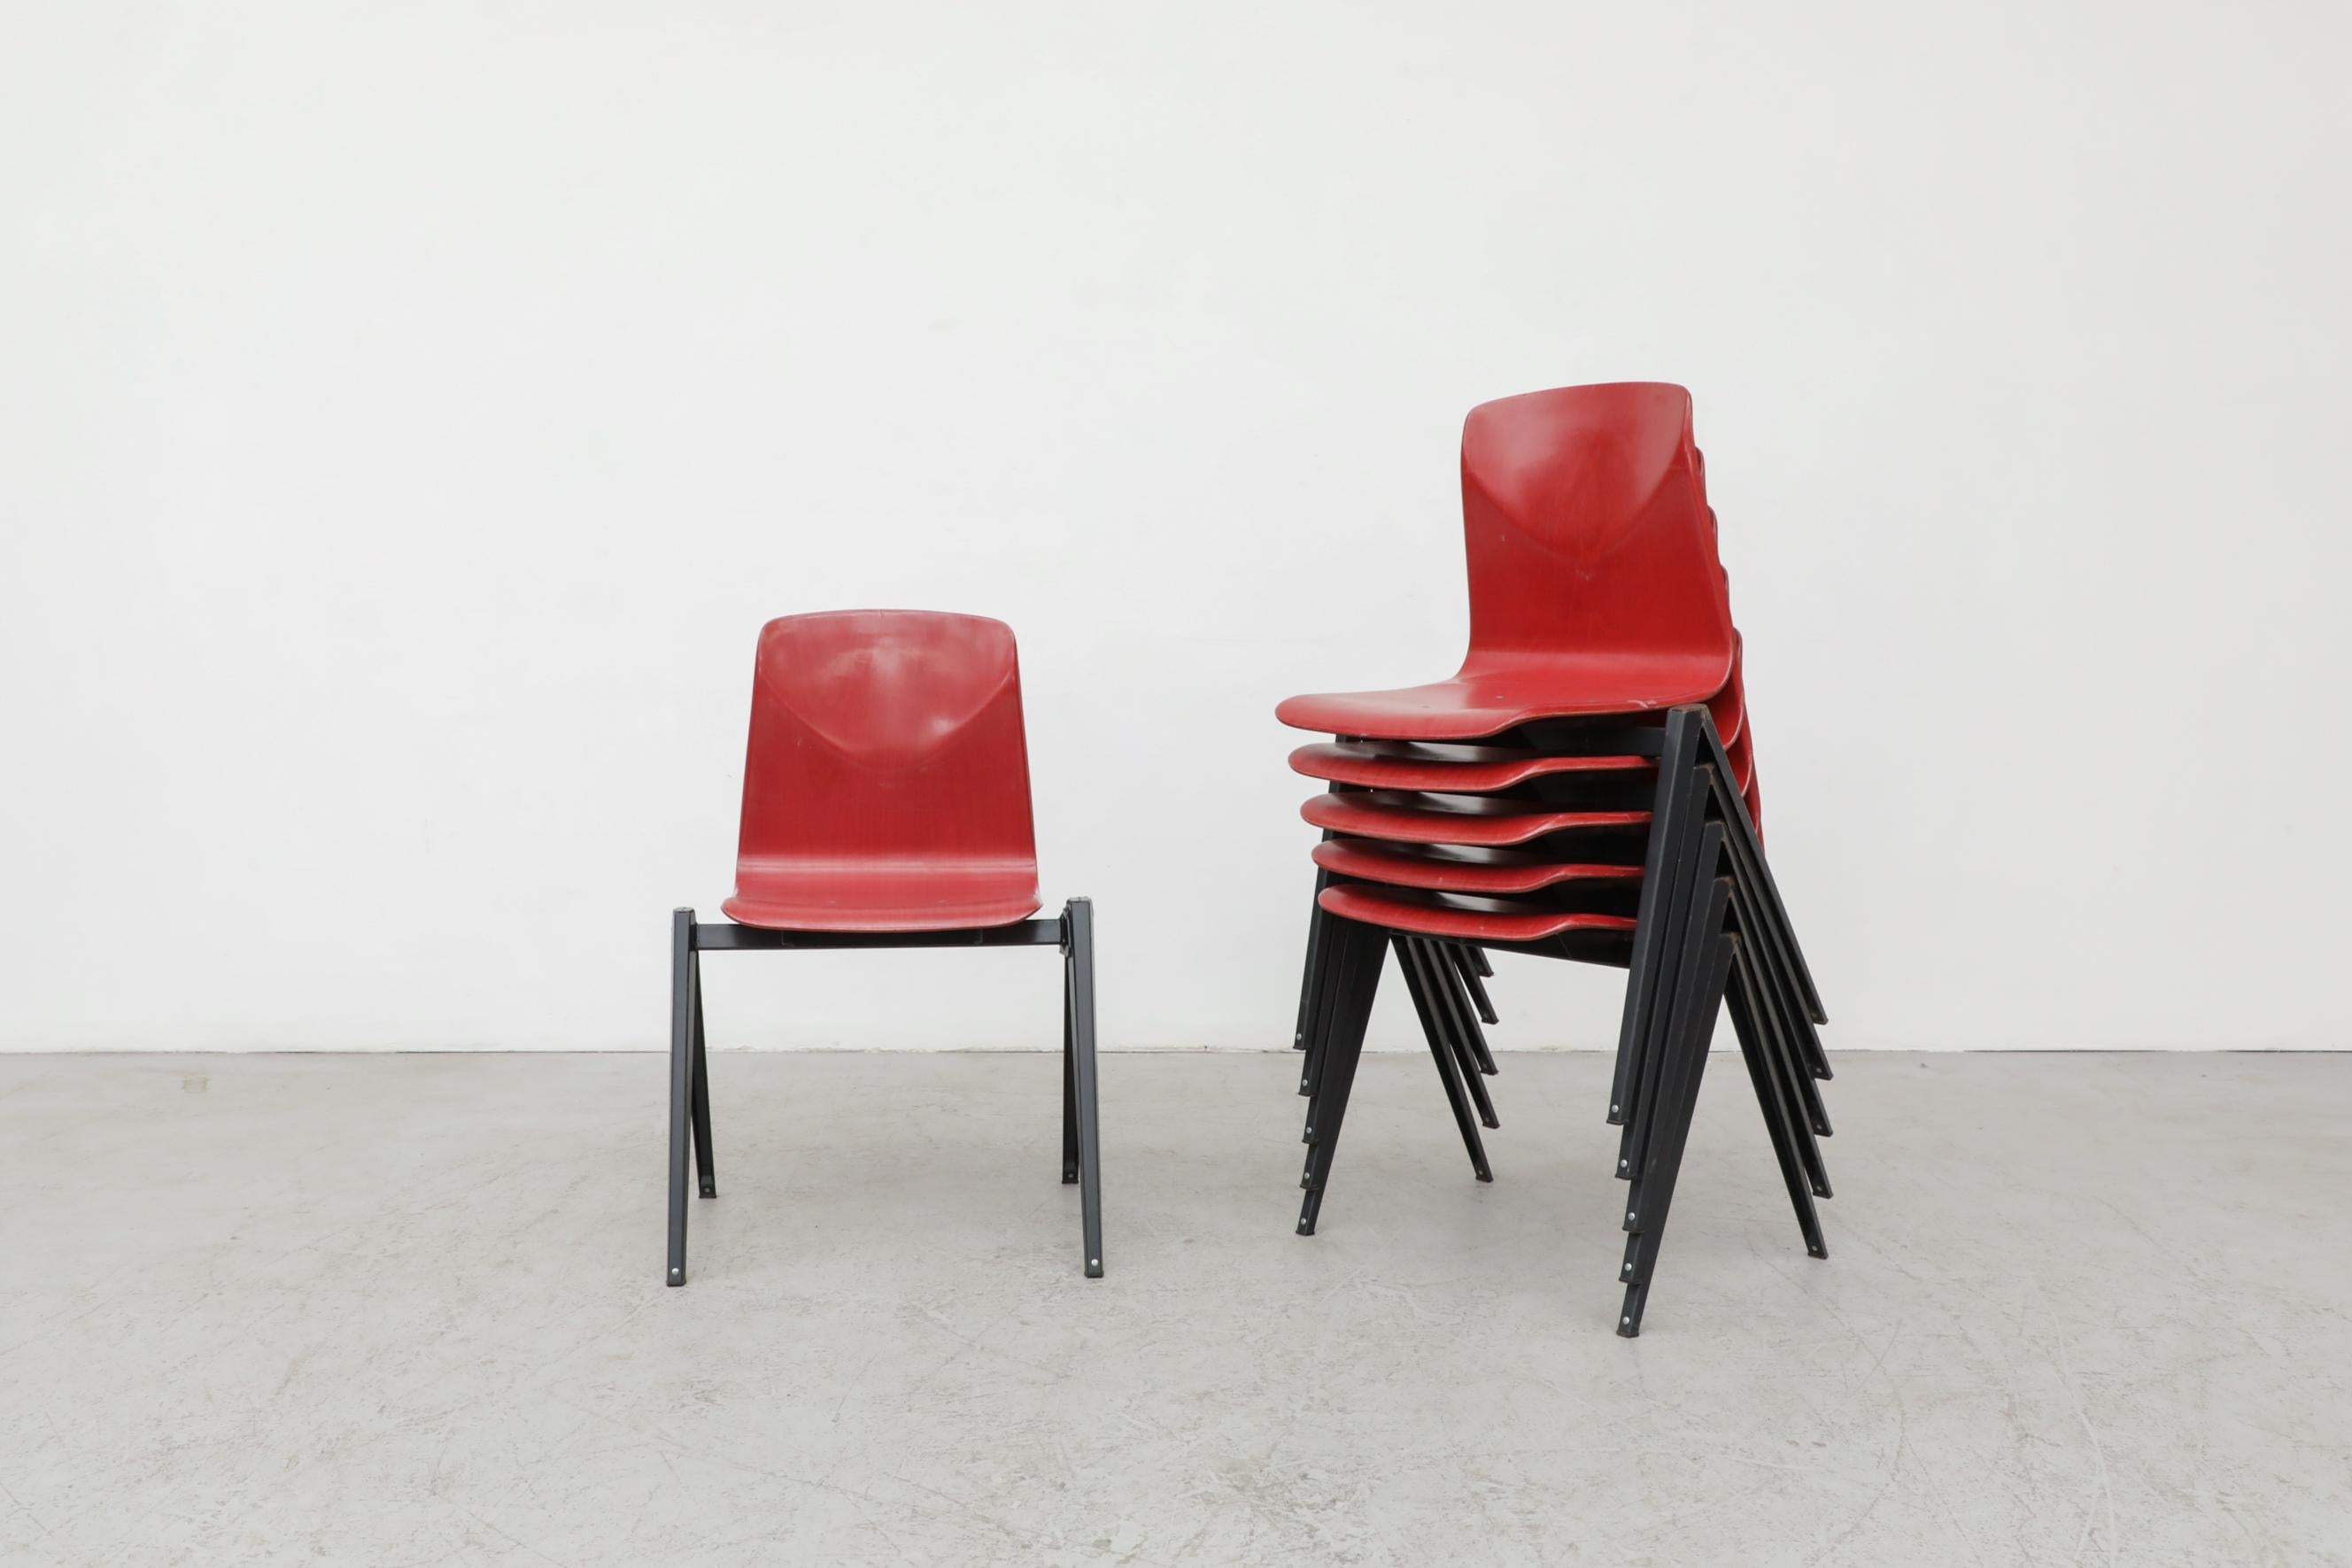 Chaises empilables industrielles de style Prouve avec assise en coquille de style Hansen en rouge et piétements en métal émaillé foncé par Galvanitas. Des liens créatifs pour faire des rangées. En état original avec patine visible. L'usure est